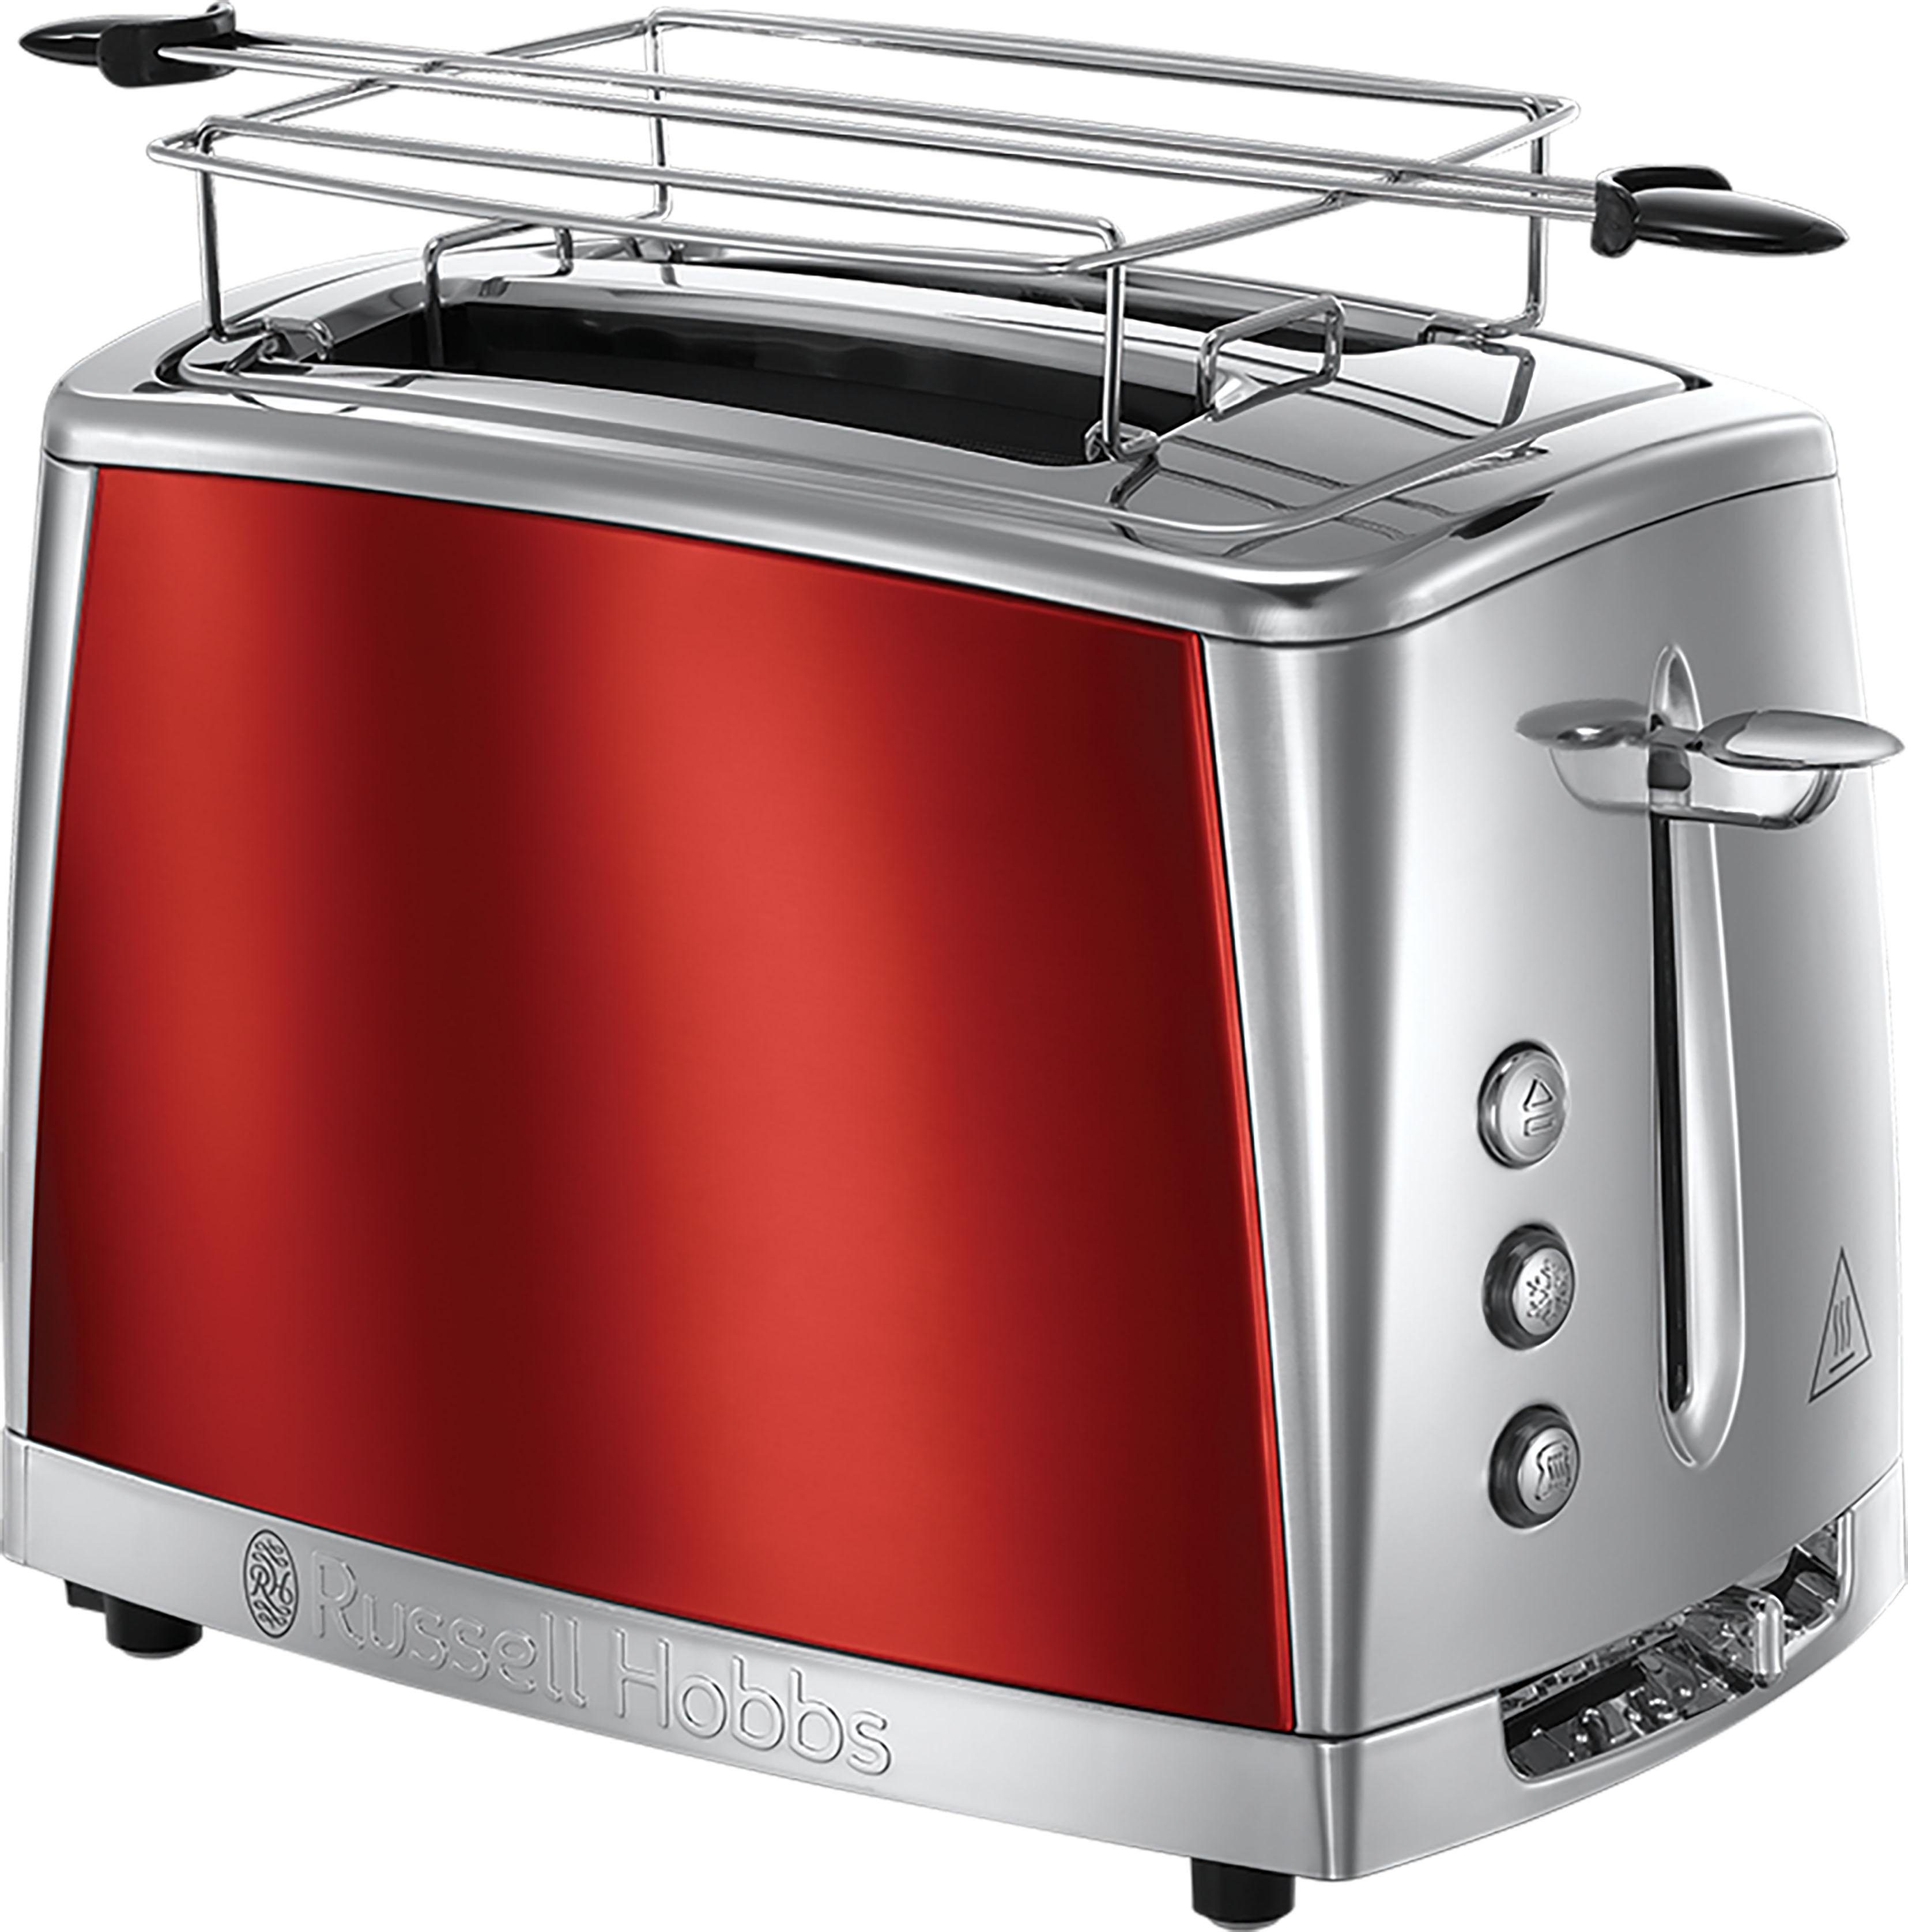 RUSSELL HOBBS Toaster Luna des Scheiben, Lift&Look Solar 2 für ermöglicht Anschauen W, Toastes 23221-56, Red Schlitze, kurze das während des Röstens 2 Funktion 1550